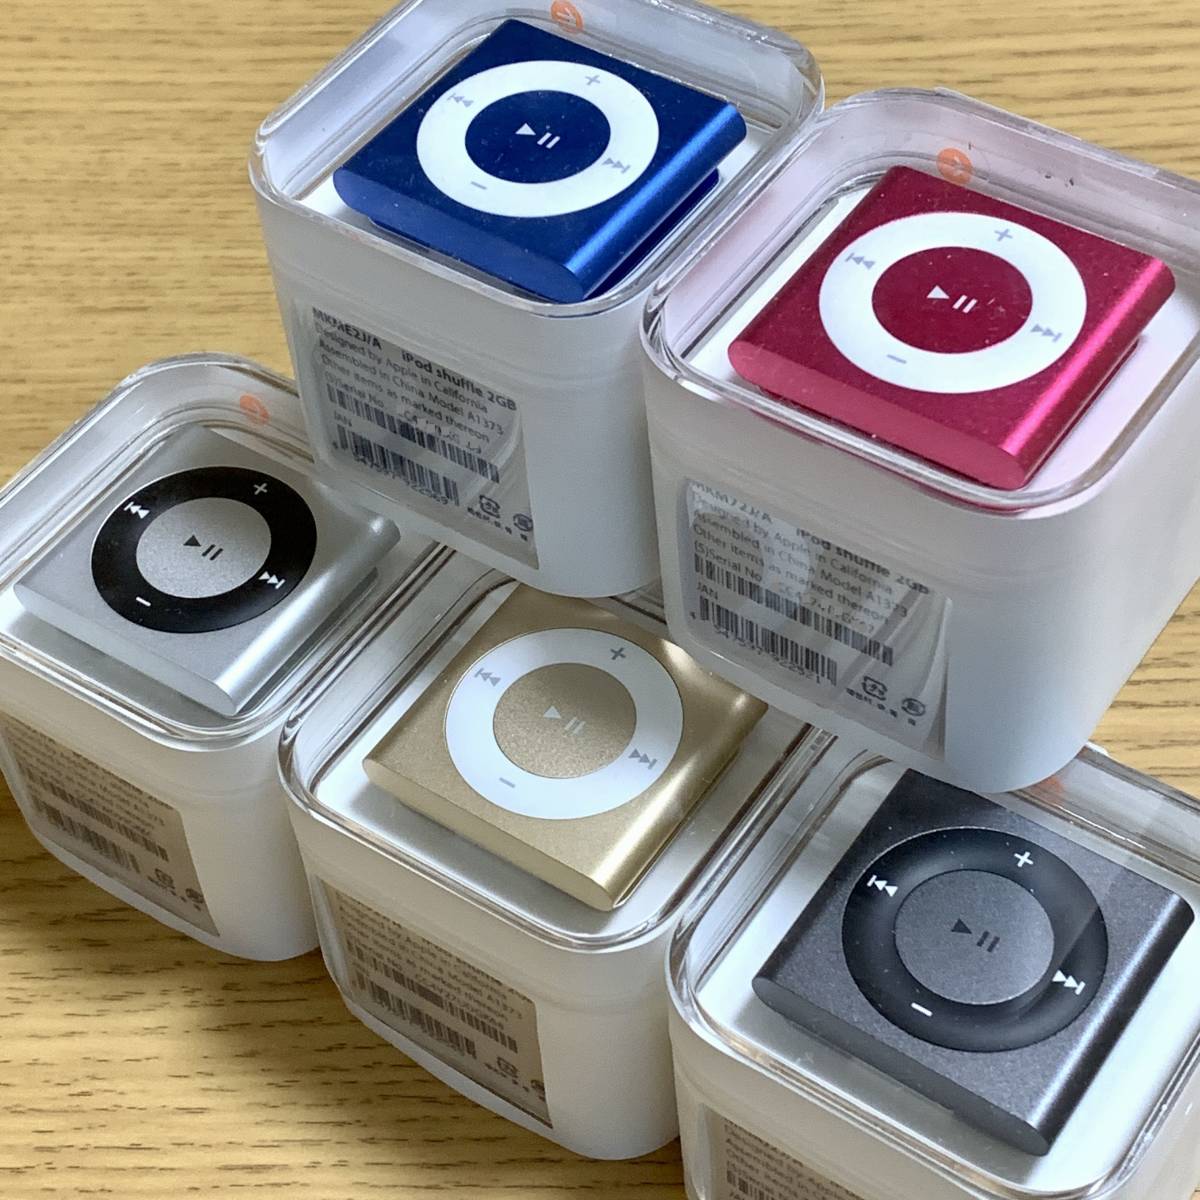 ★新品未開封★Apple アップル iPod shuffle 第4世代 2GB 本体 フルセット5種 シャッフル スペースグレイ ゴールド シルバー  ピンク ブルー